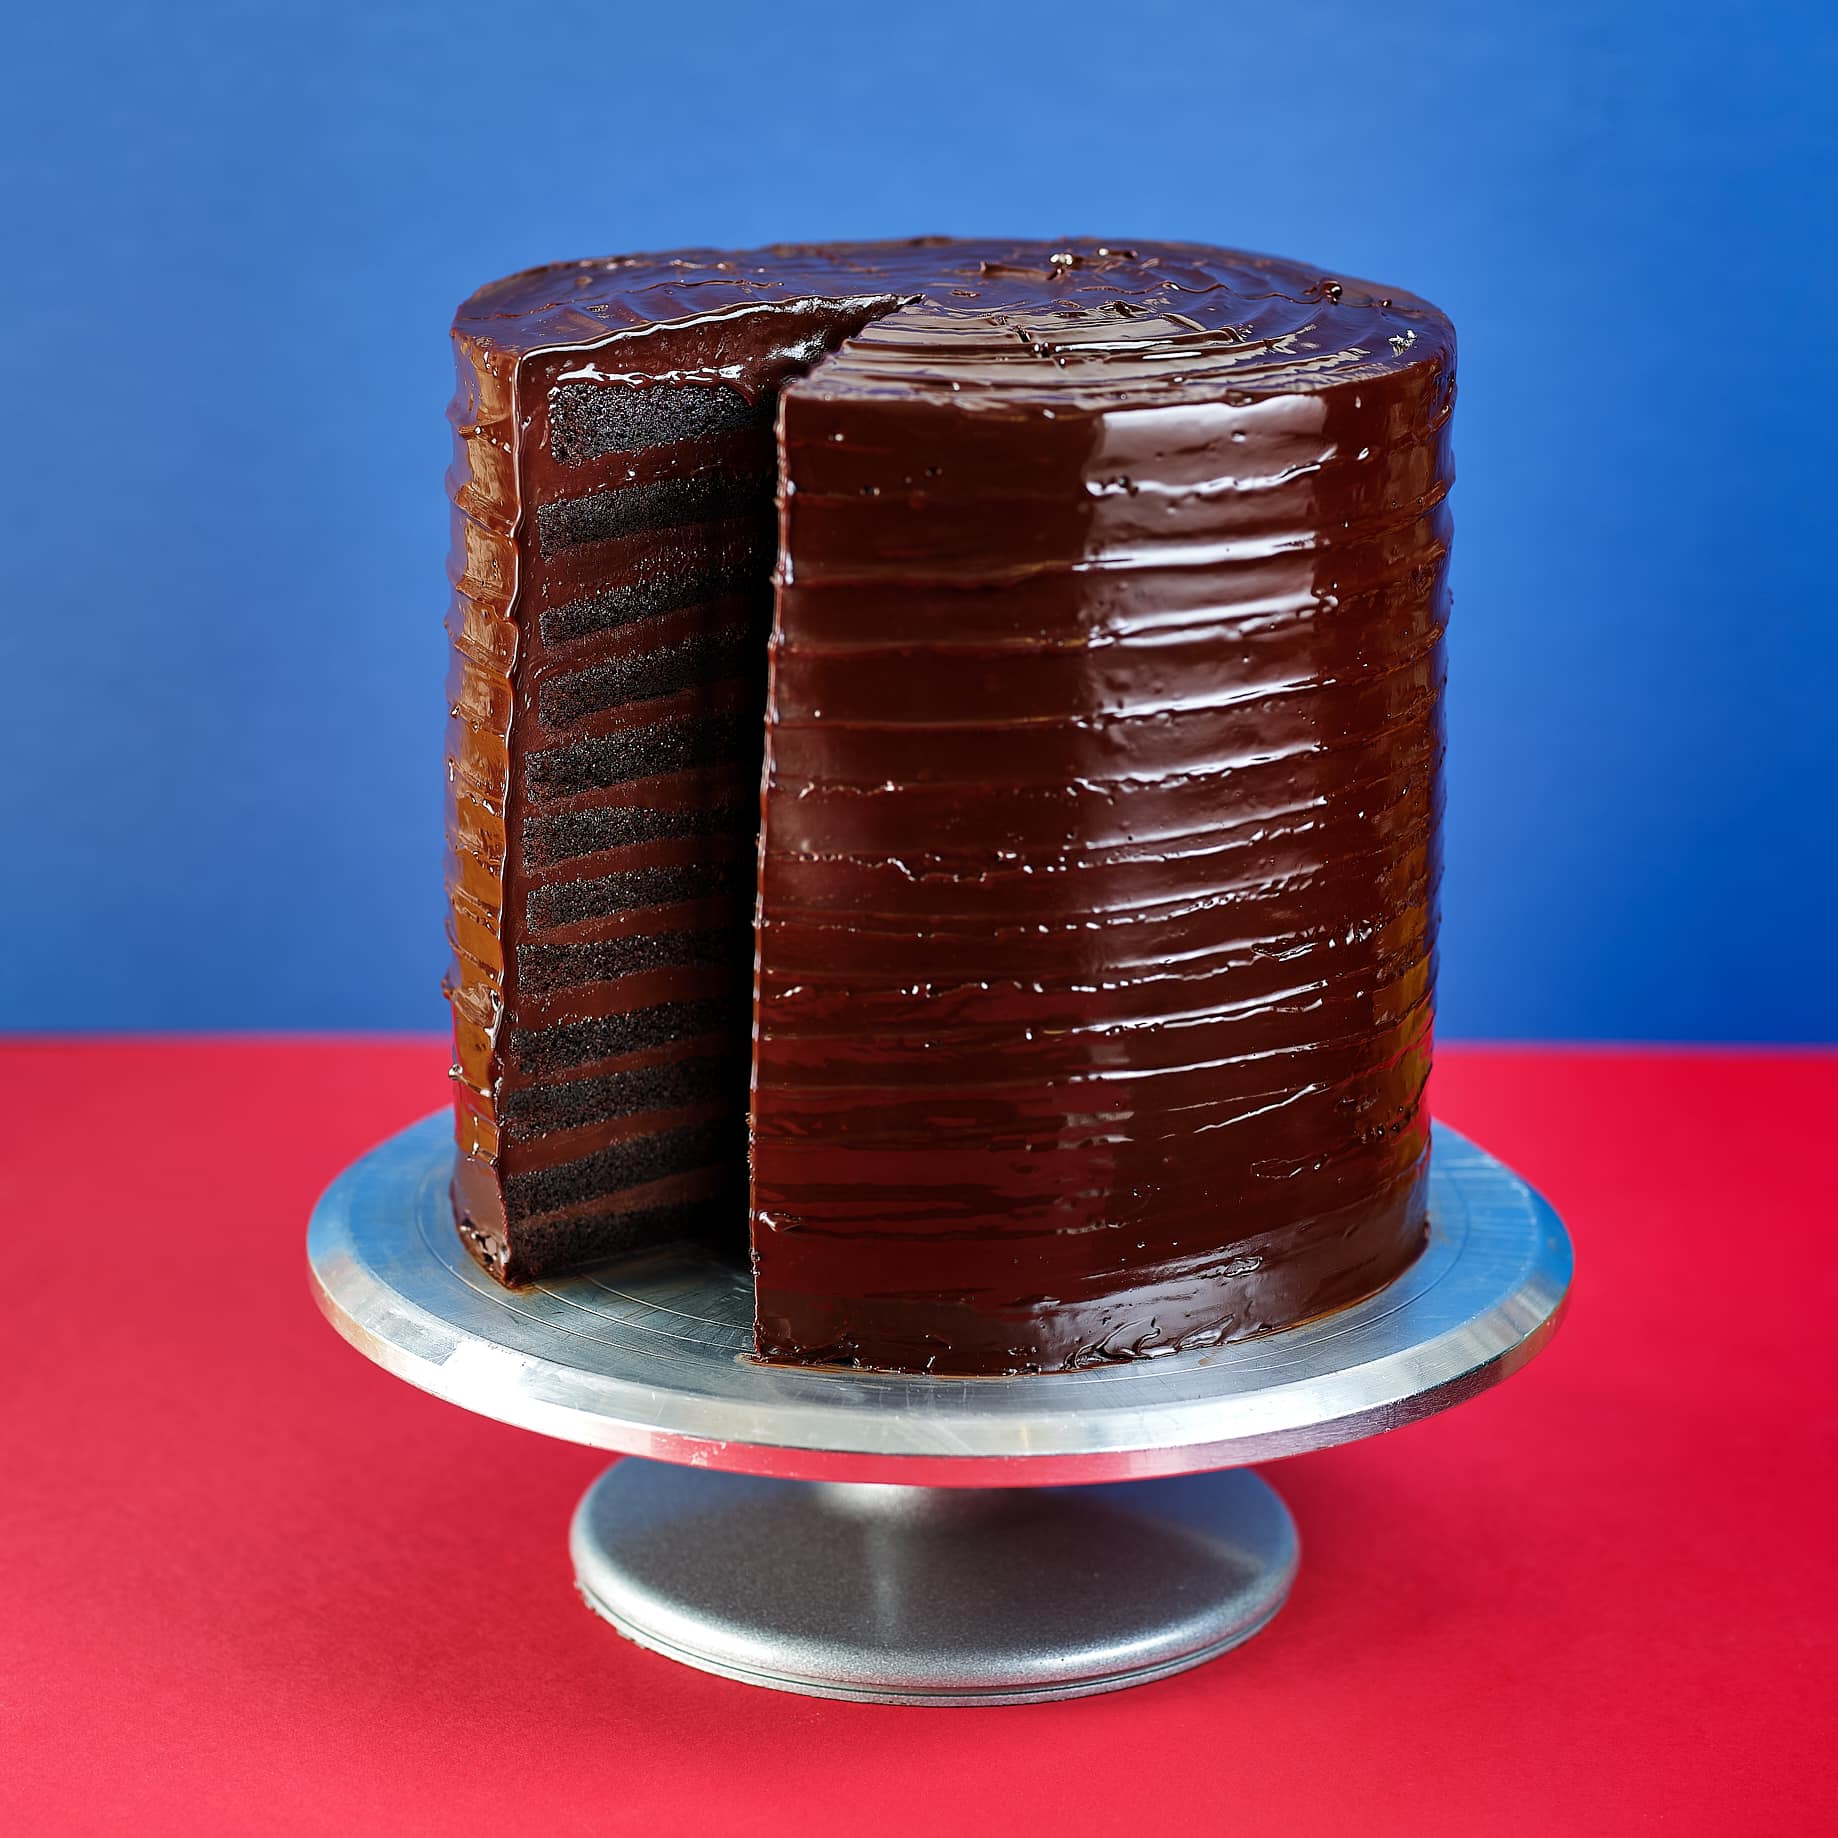 Get Baked's viral Bruce cake